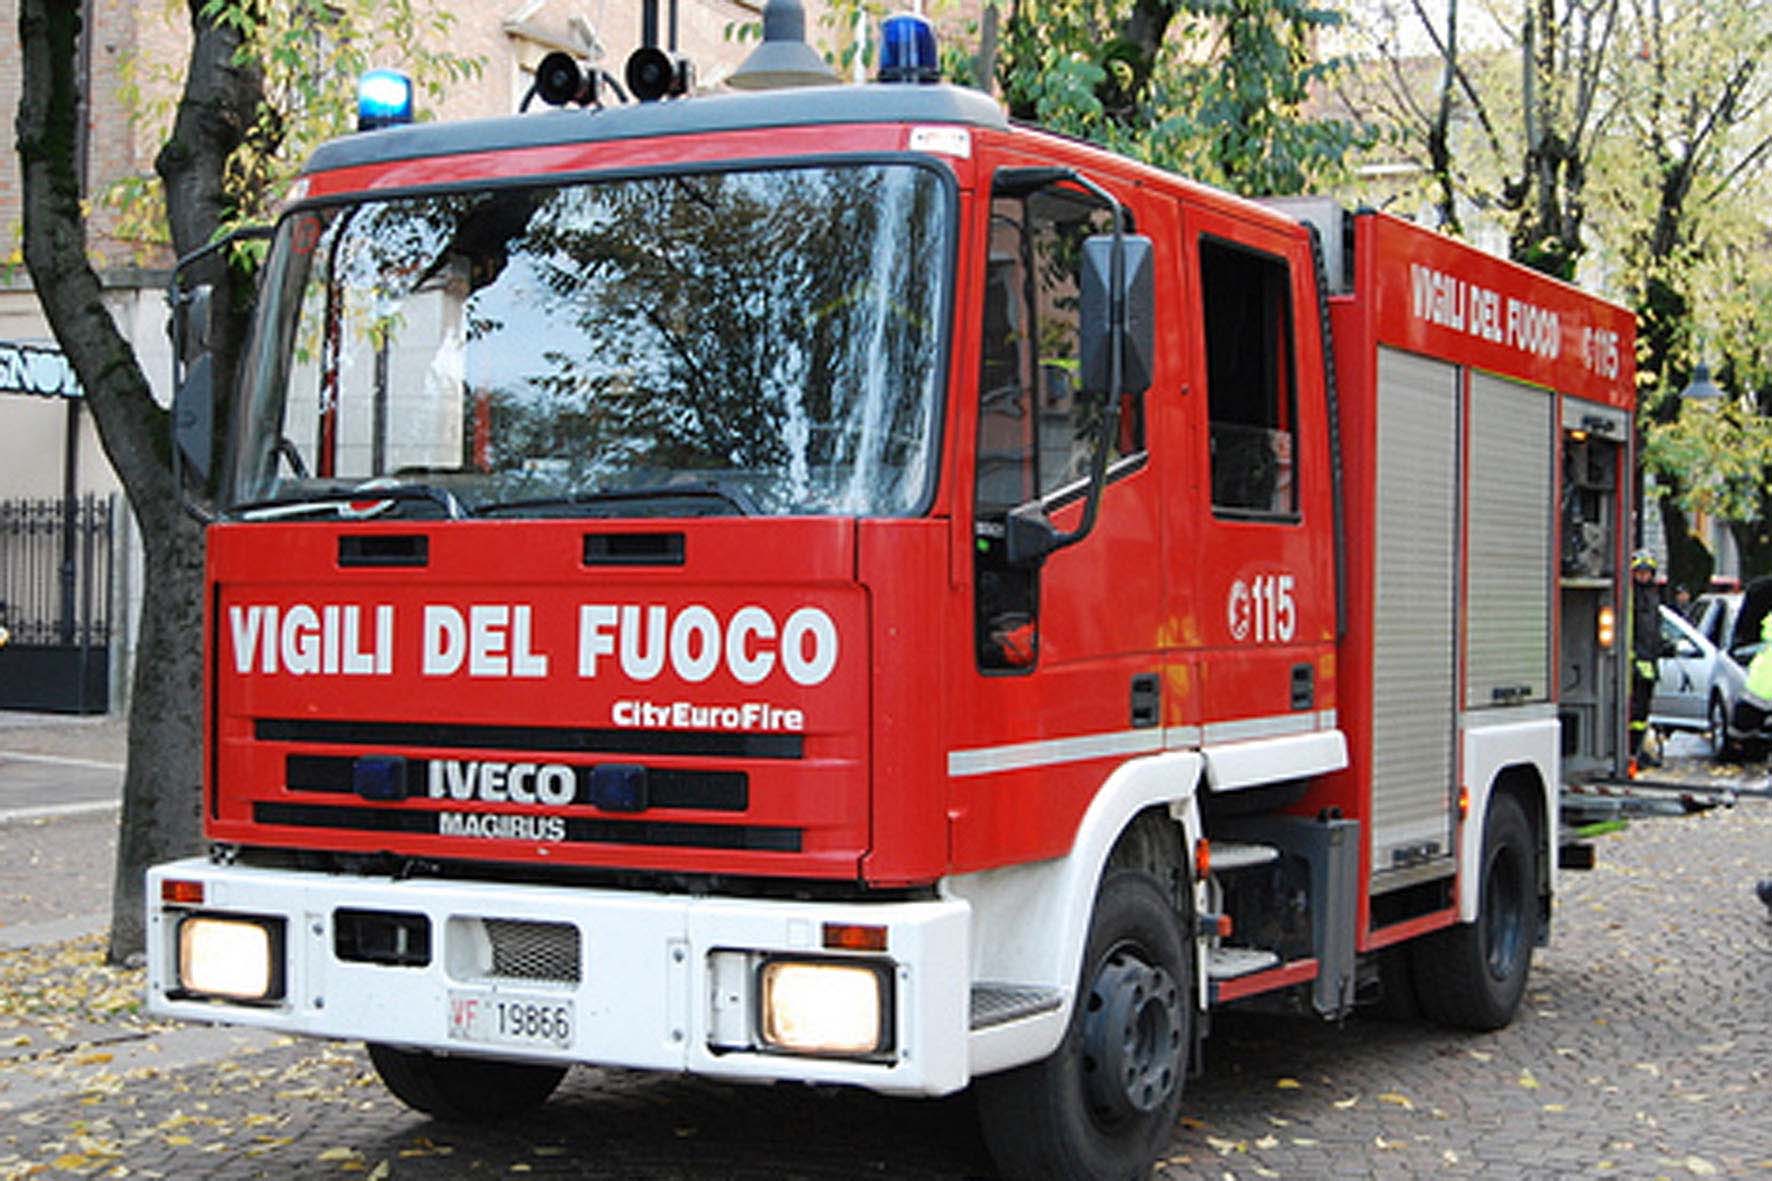  Notte di maltempo a Napoli, oltre 50 interventi dei vigili del fuoco